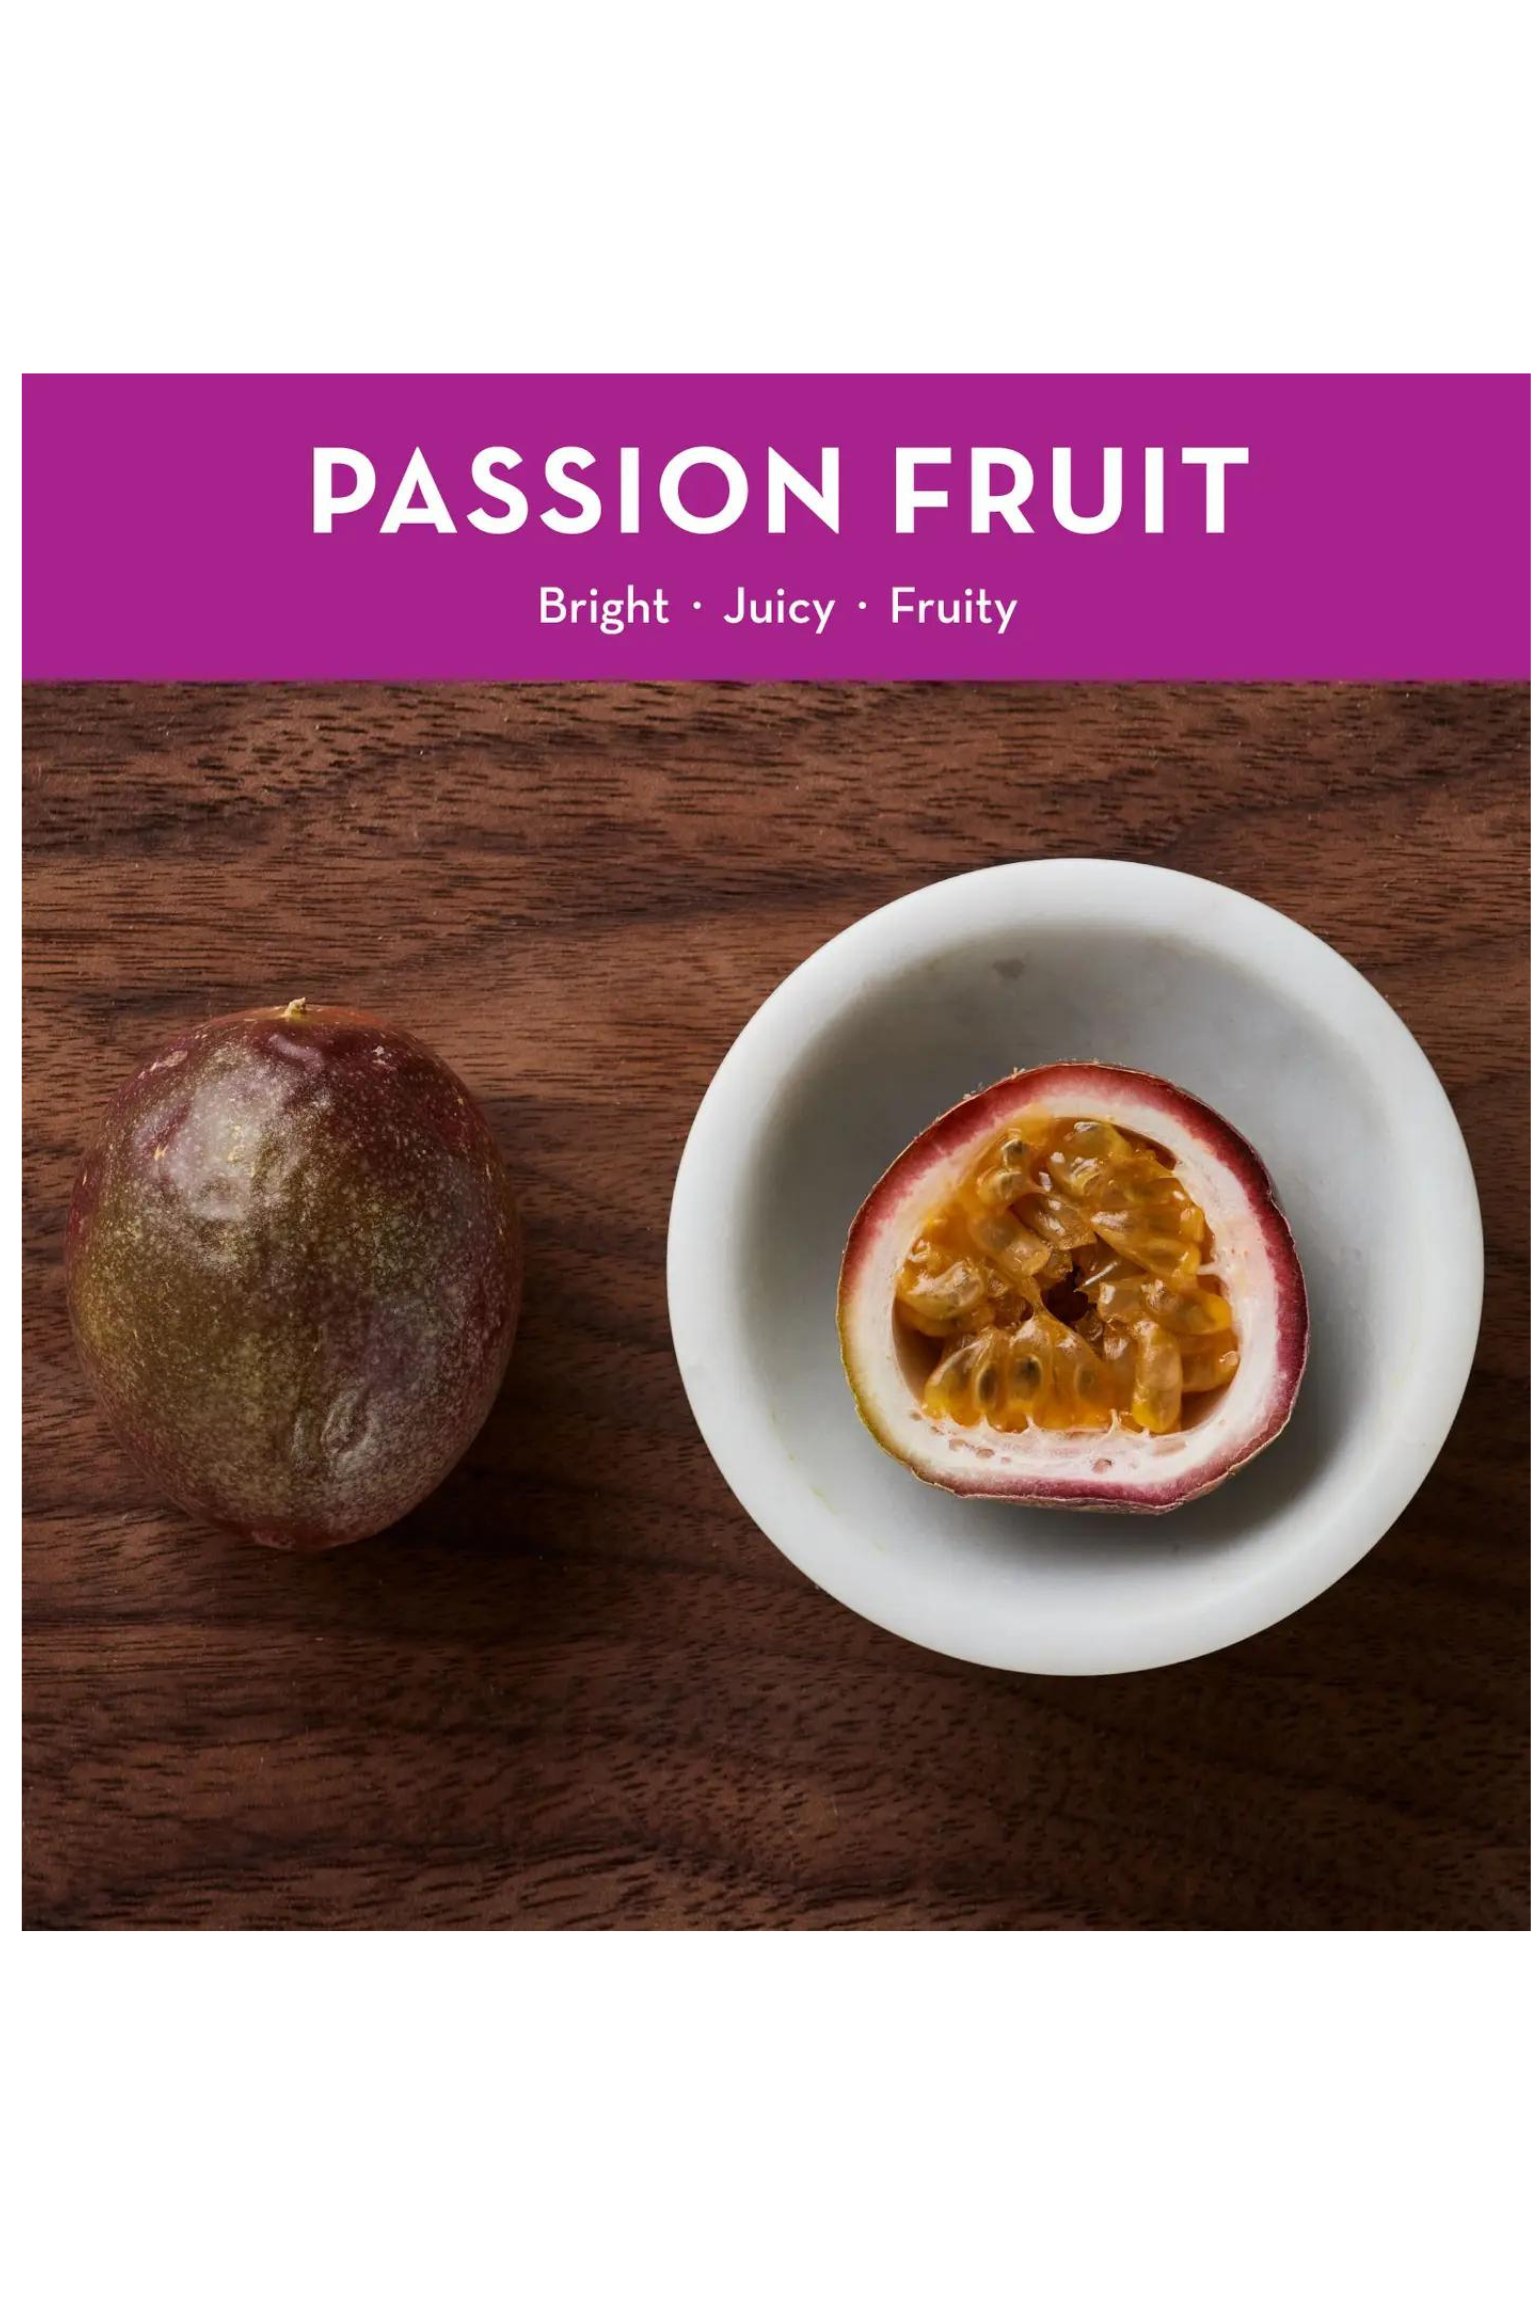 12oz Passion Fruit